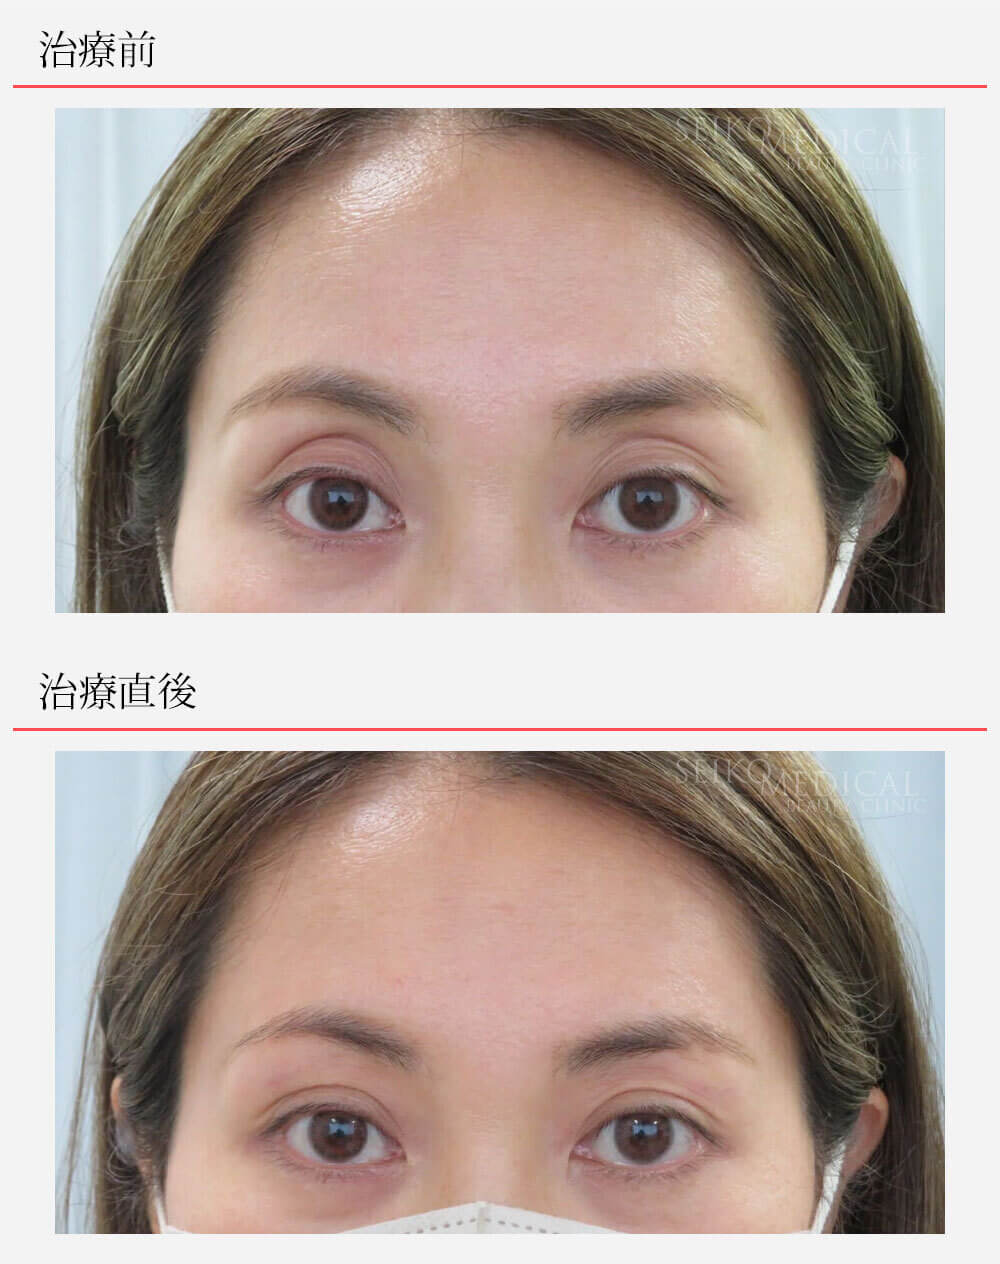 くぼみ目への凸凹しないヒアルロン酸注入、治療直後の経過